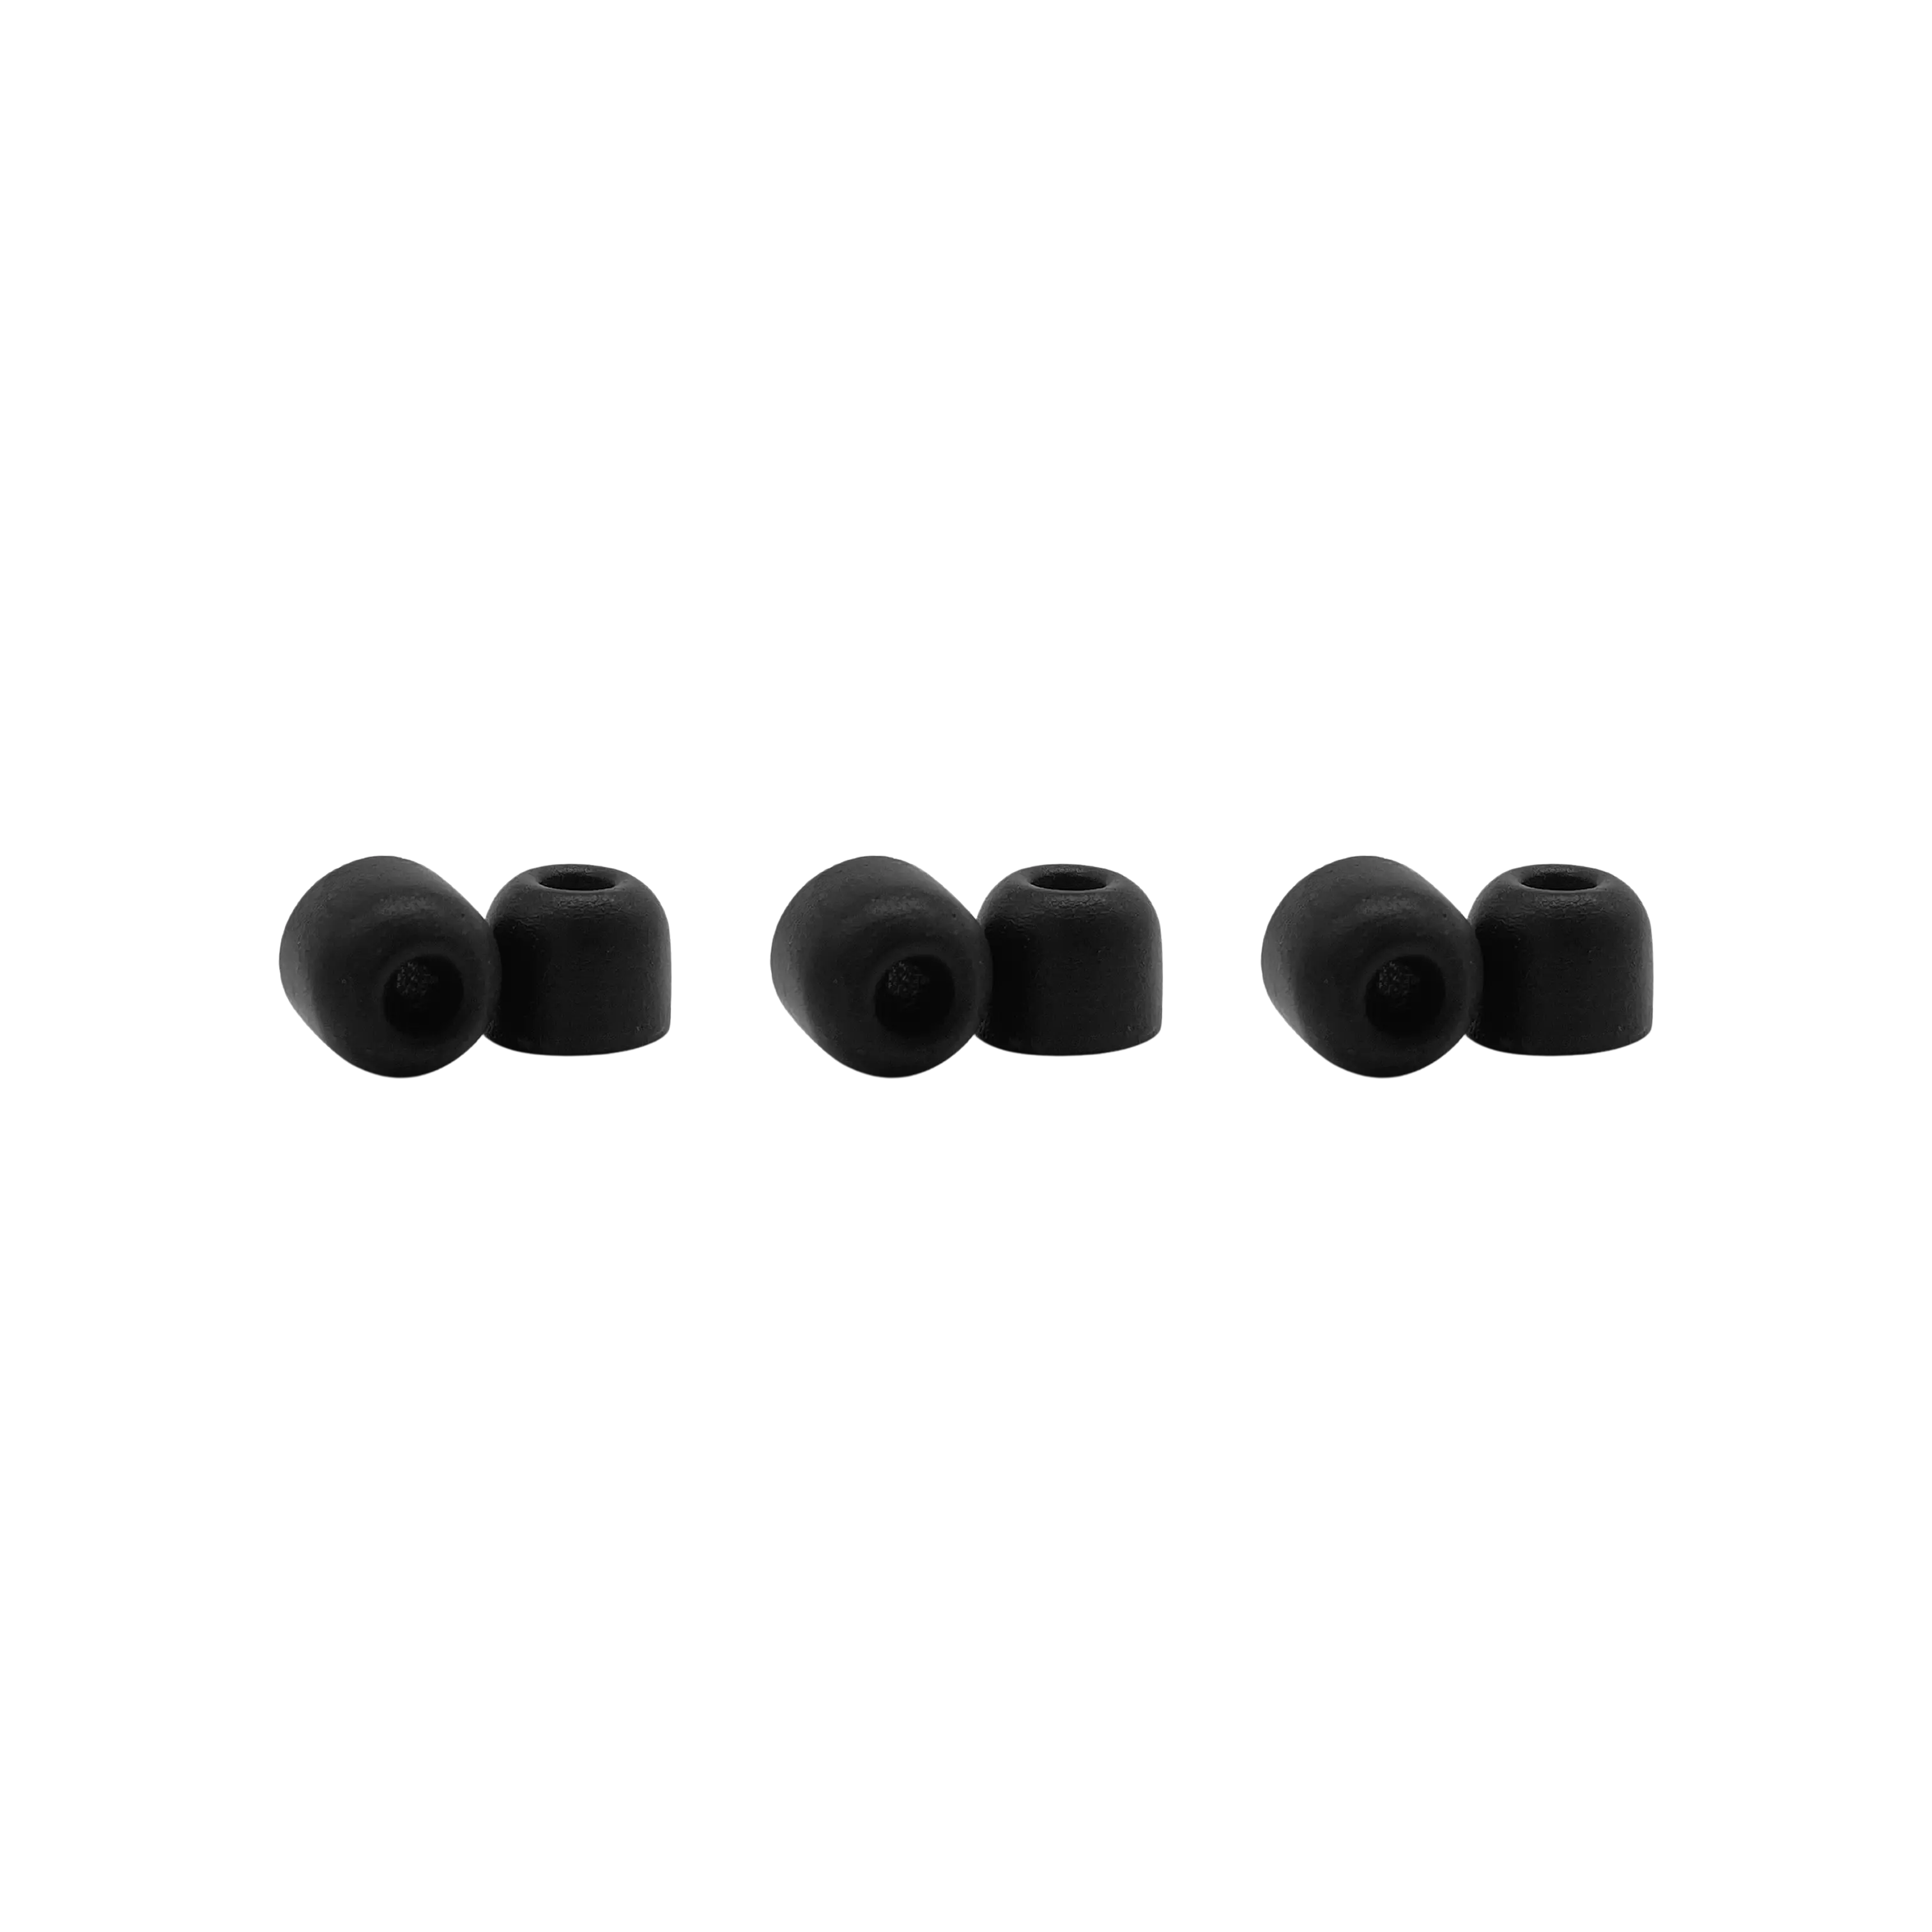 EACYF1-6M Comply (100 Series) Black Foam Sleeves - Medium, 3 Pairs